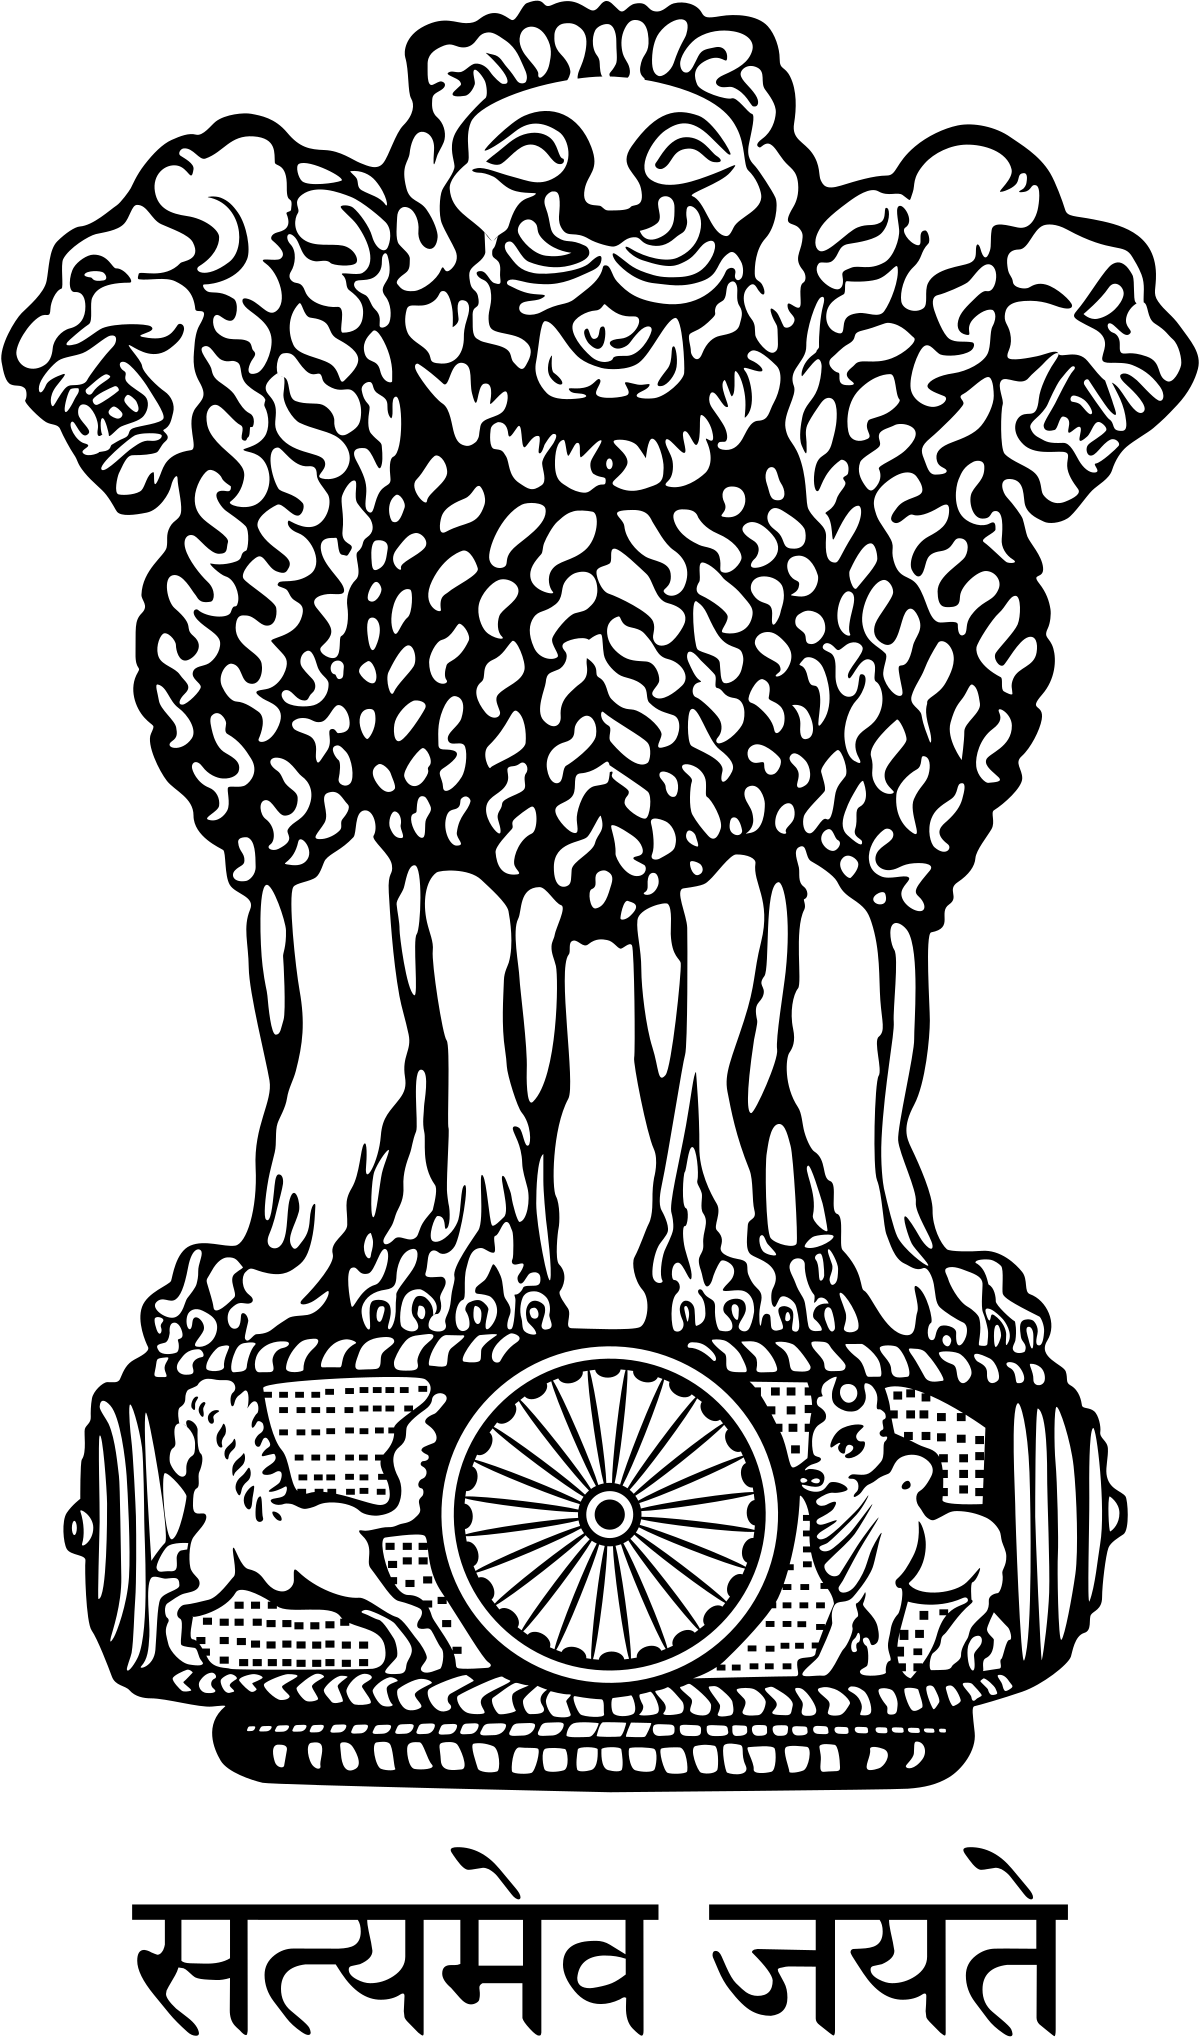 India Logo - State Emblem of India